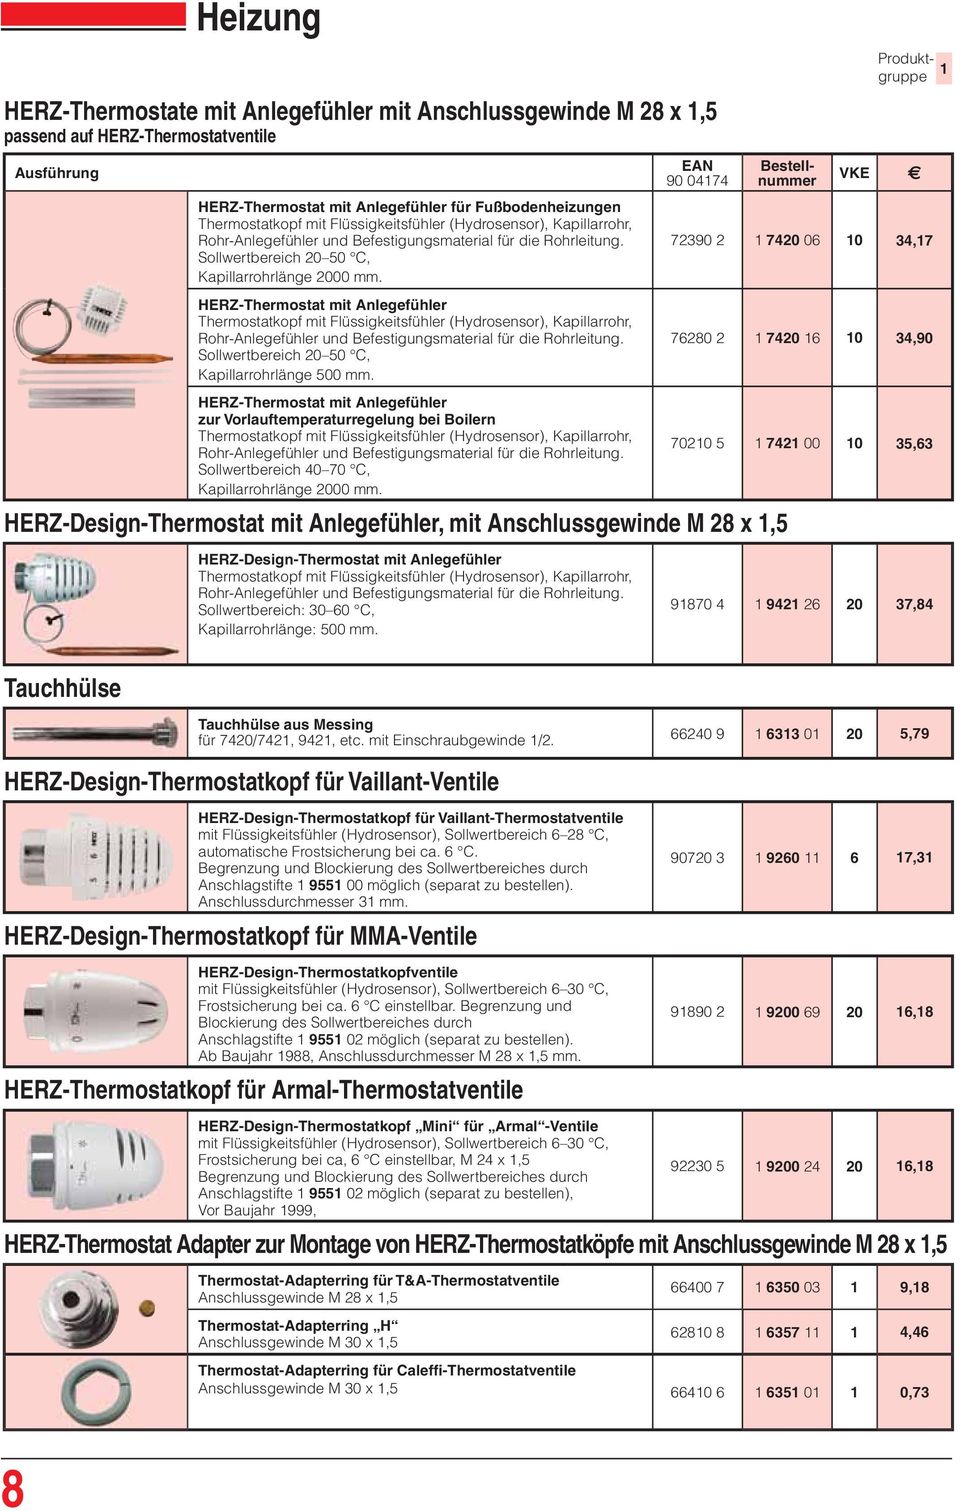 HERZ-Thermostat mit Anlegefühler Thermostatkopf mit Flüssigkeitsfühler (Hydrosensor), Kapillarrohr, Rohr-Anlegefühler und Befestigungsmaterial für die Rohrleitung.